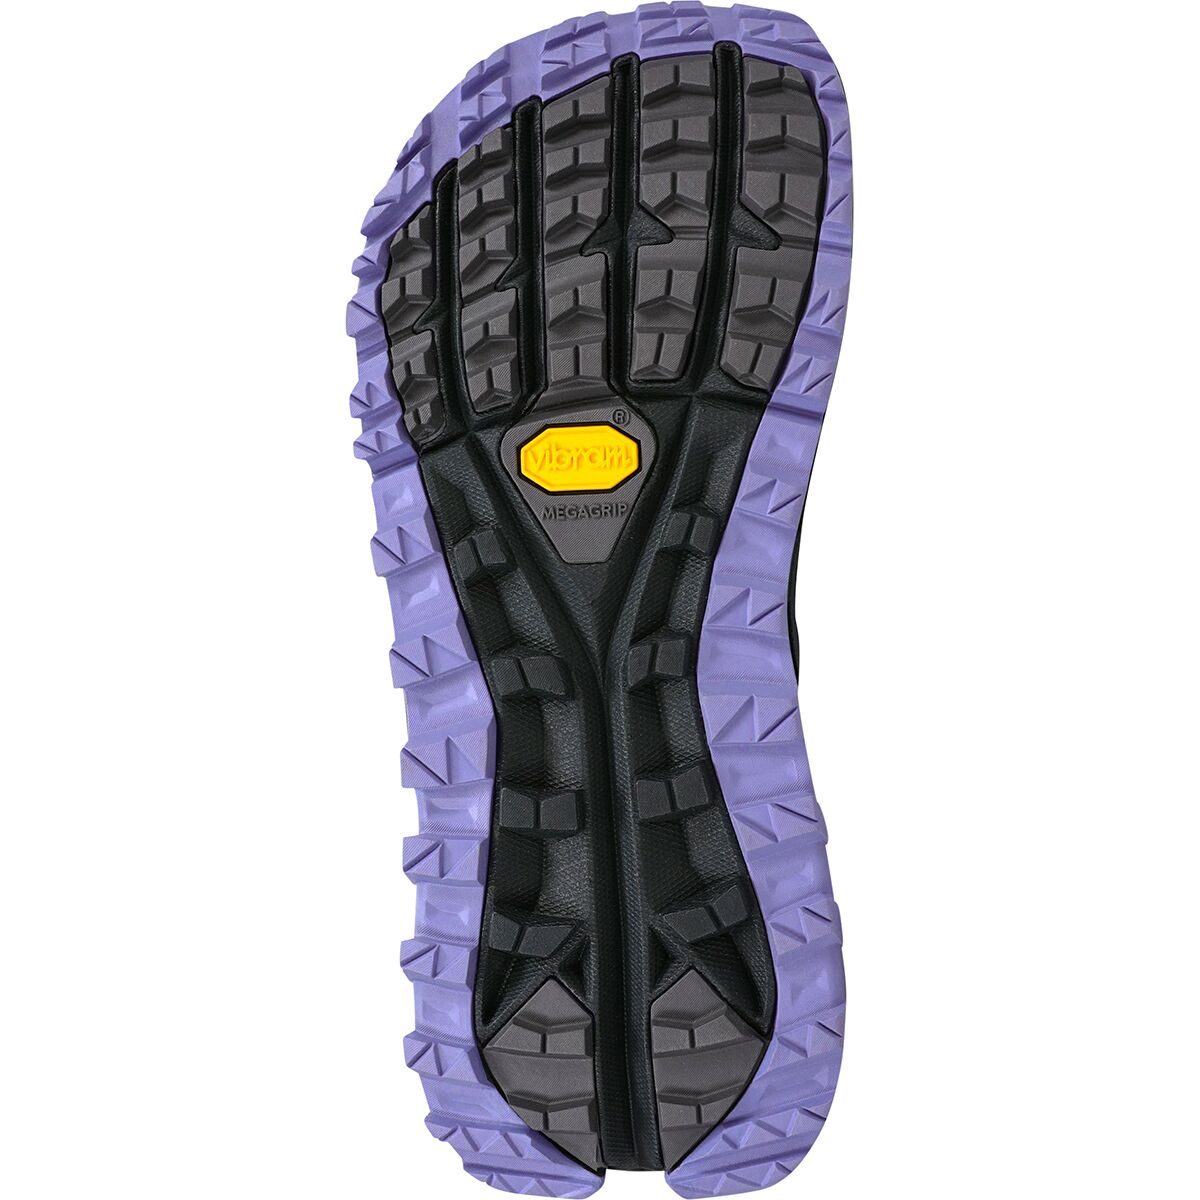 Altra Olympus 5.0 Trail Running Shoe - Women's - Footwear